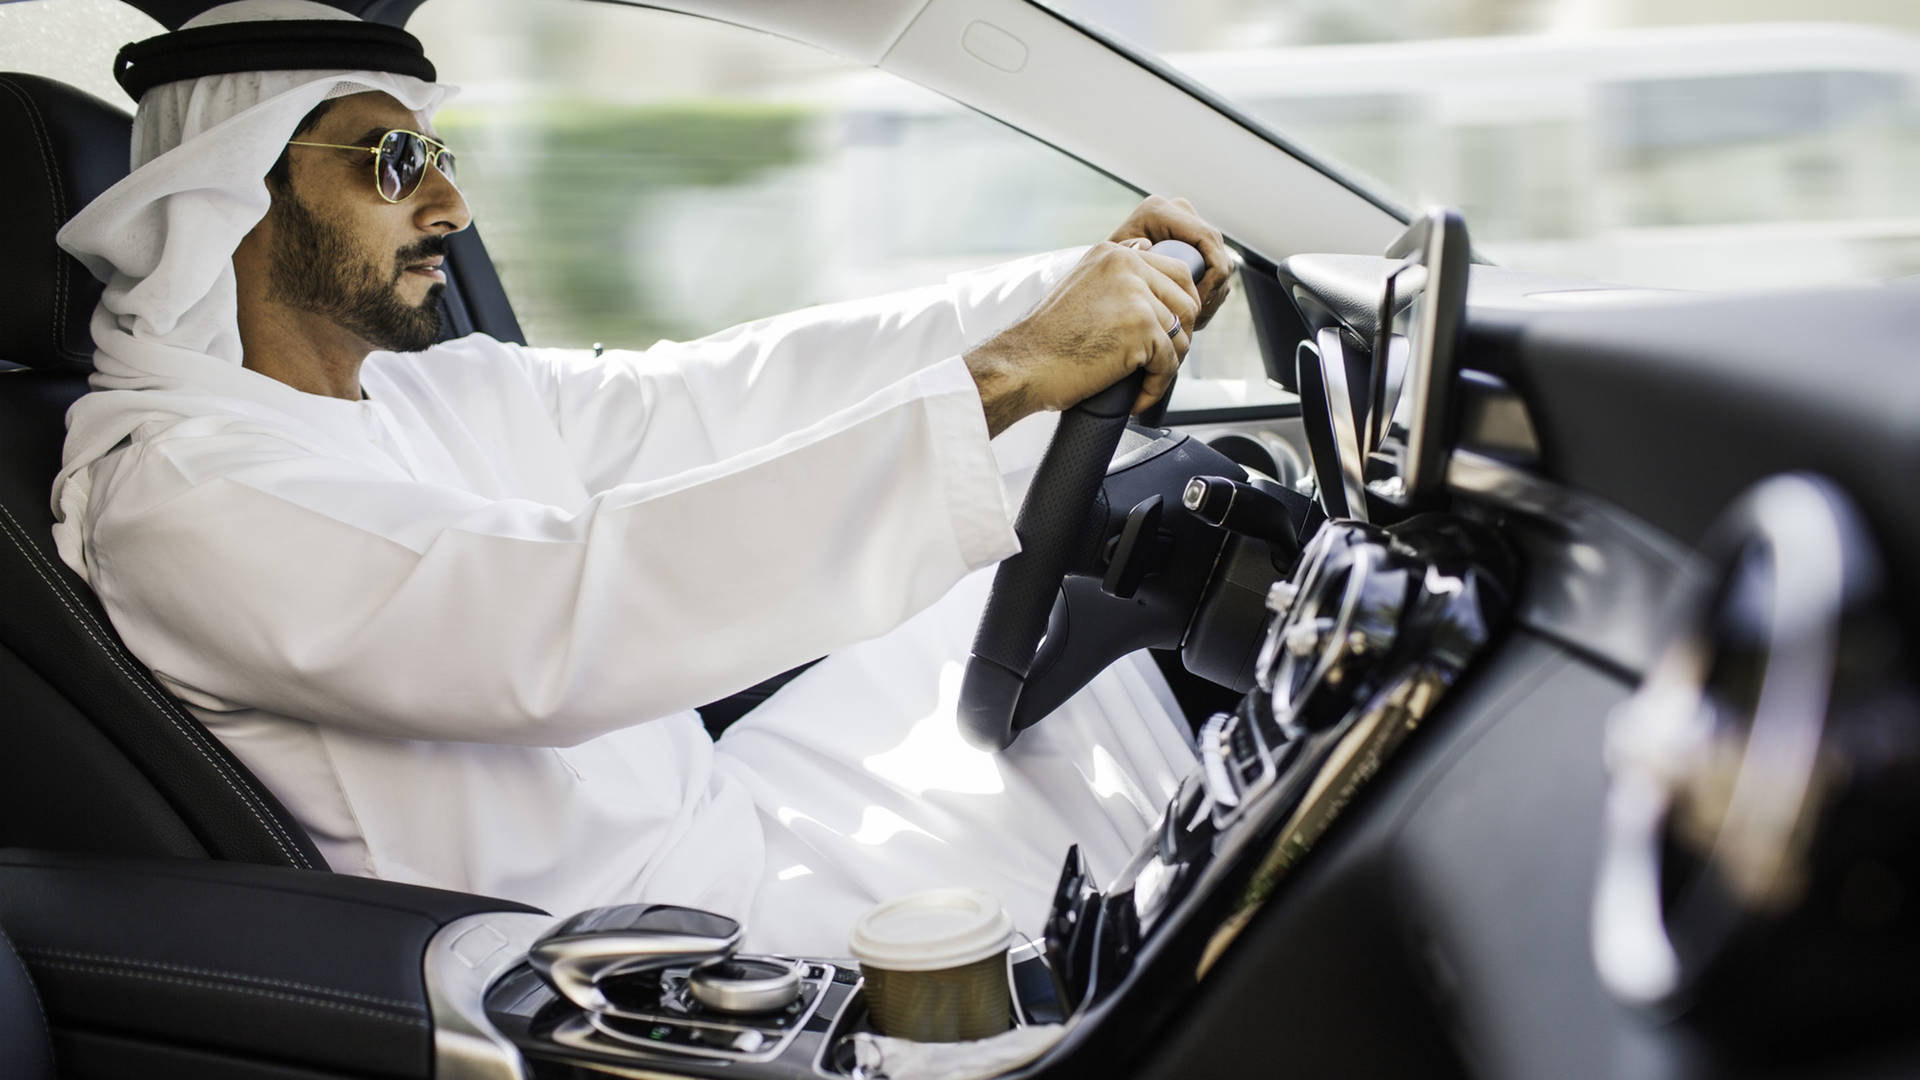 Driving through Abu Dhabi in a supercar